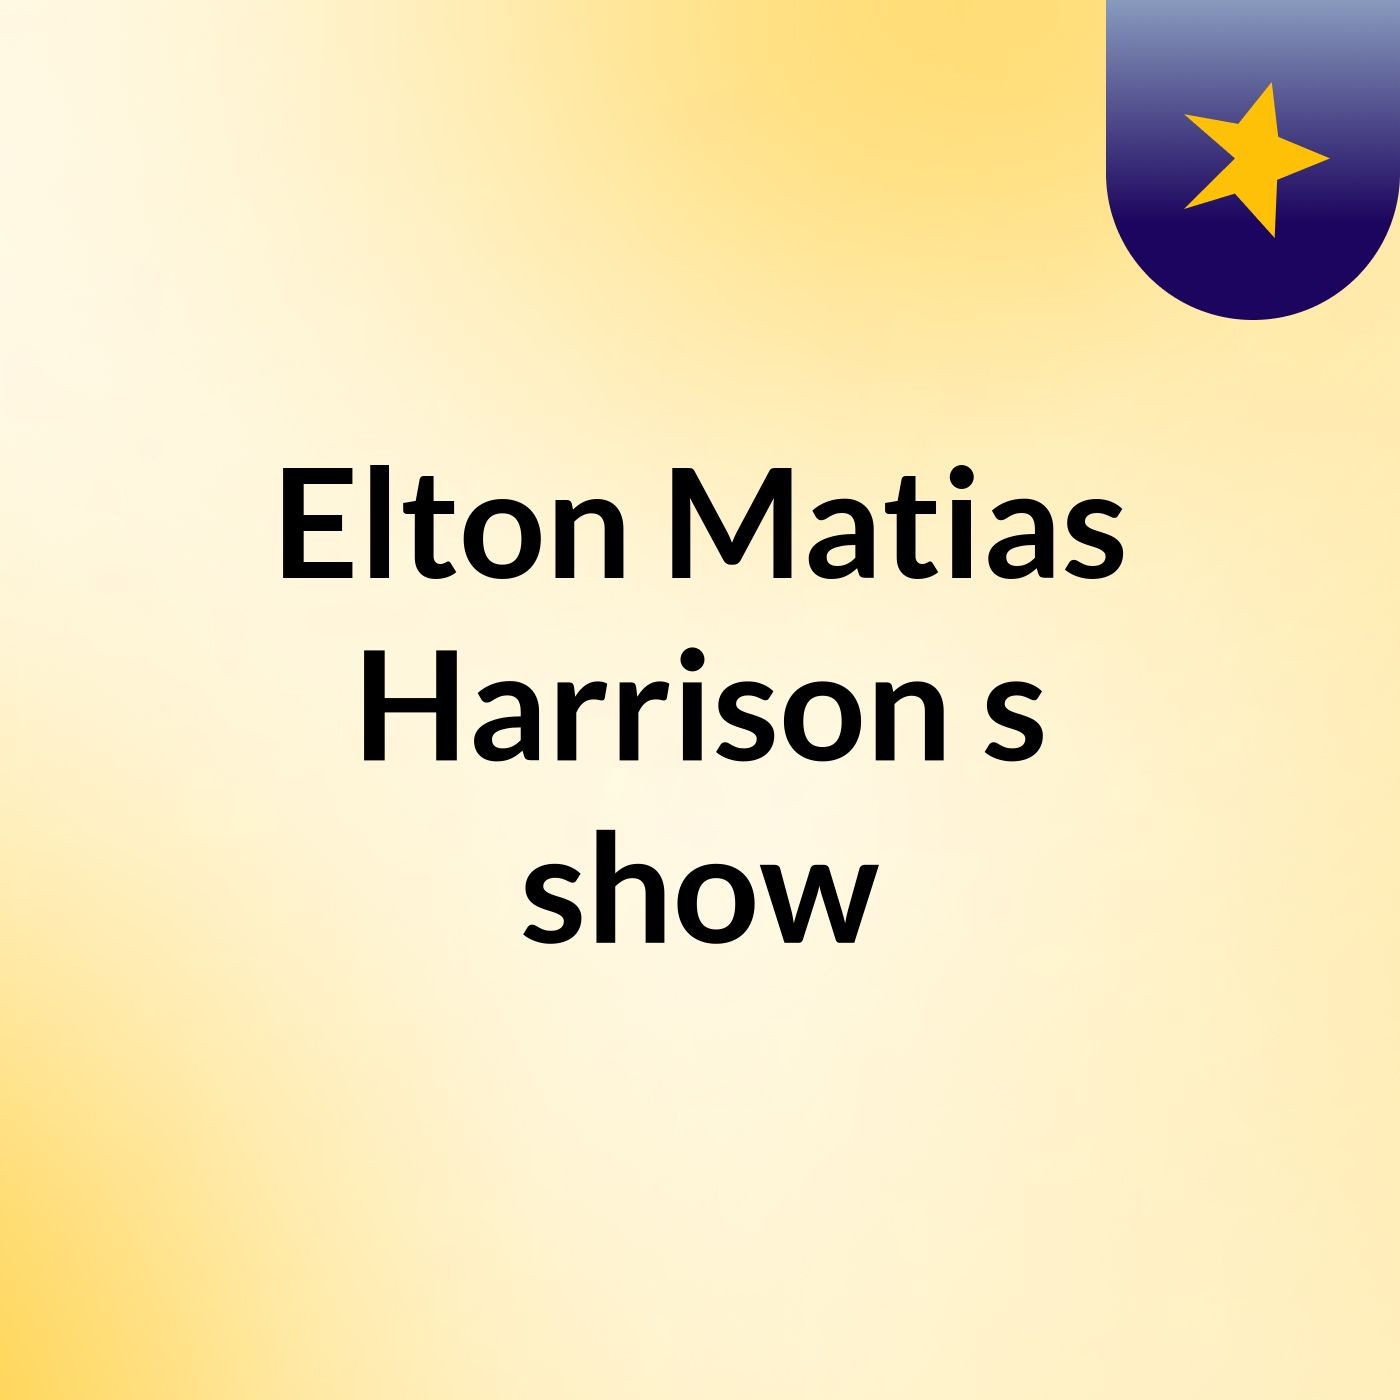 Elton Matias Harrison's show